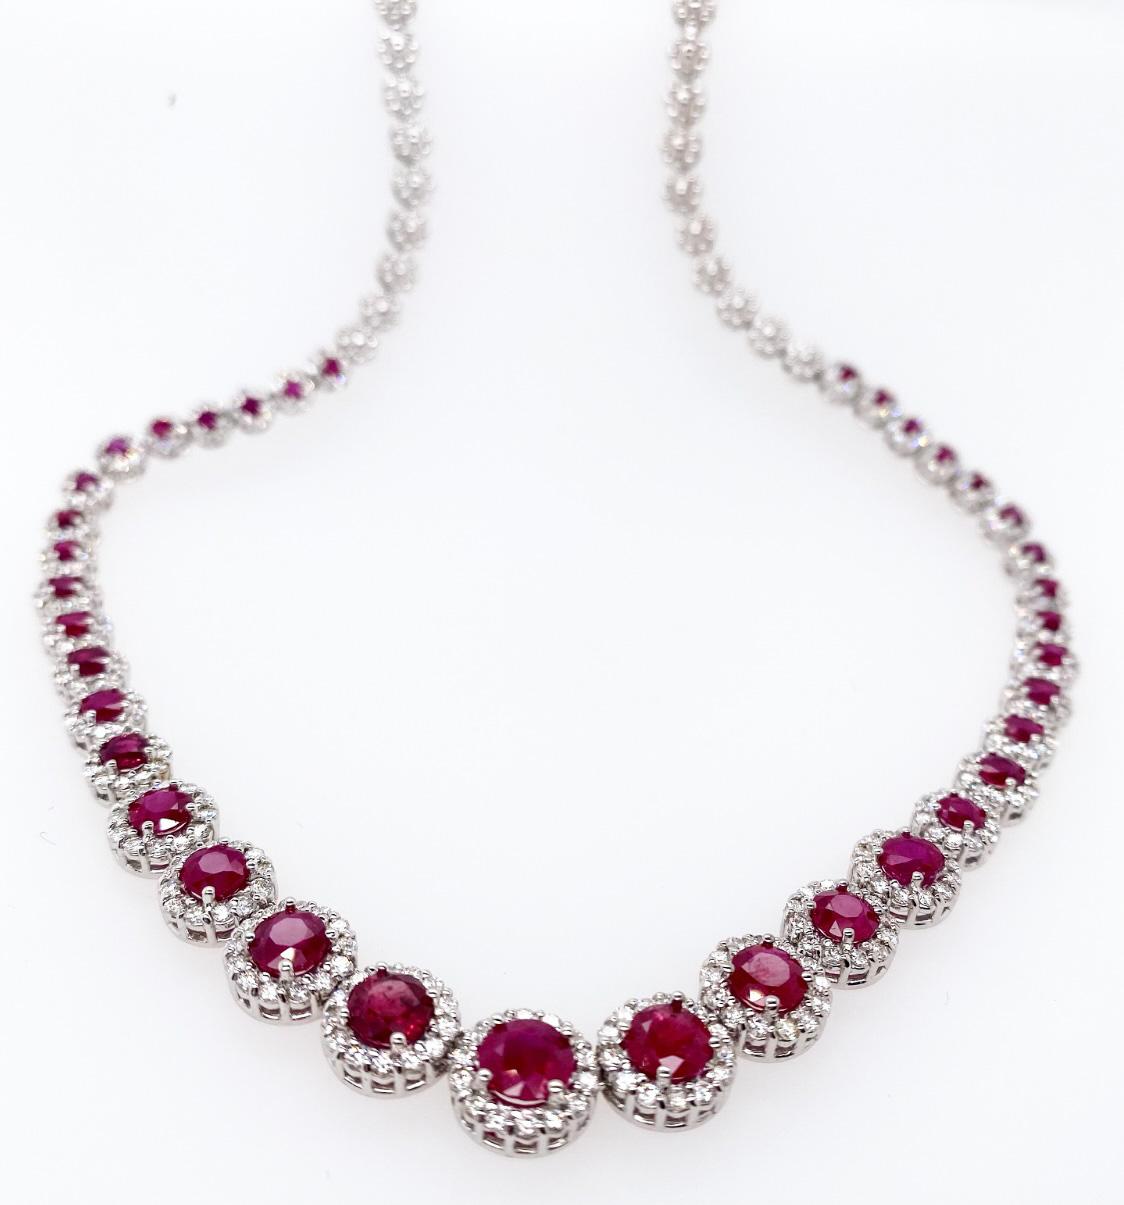 Ce magnifique collier présente un rubis rougeâtre de taille ronde rehaussé d'un halo de diamants ronds de taille brillante sertis dans de l'or blanc 18K. Le collier est composé de trente-sept rubis gradués avec des grappes de diamants. Ce magnifique